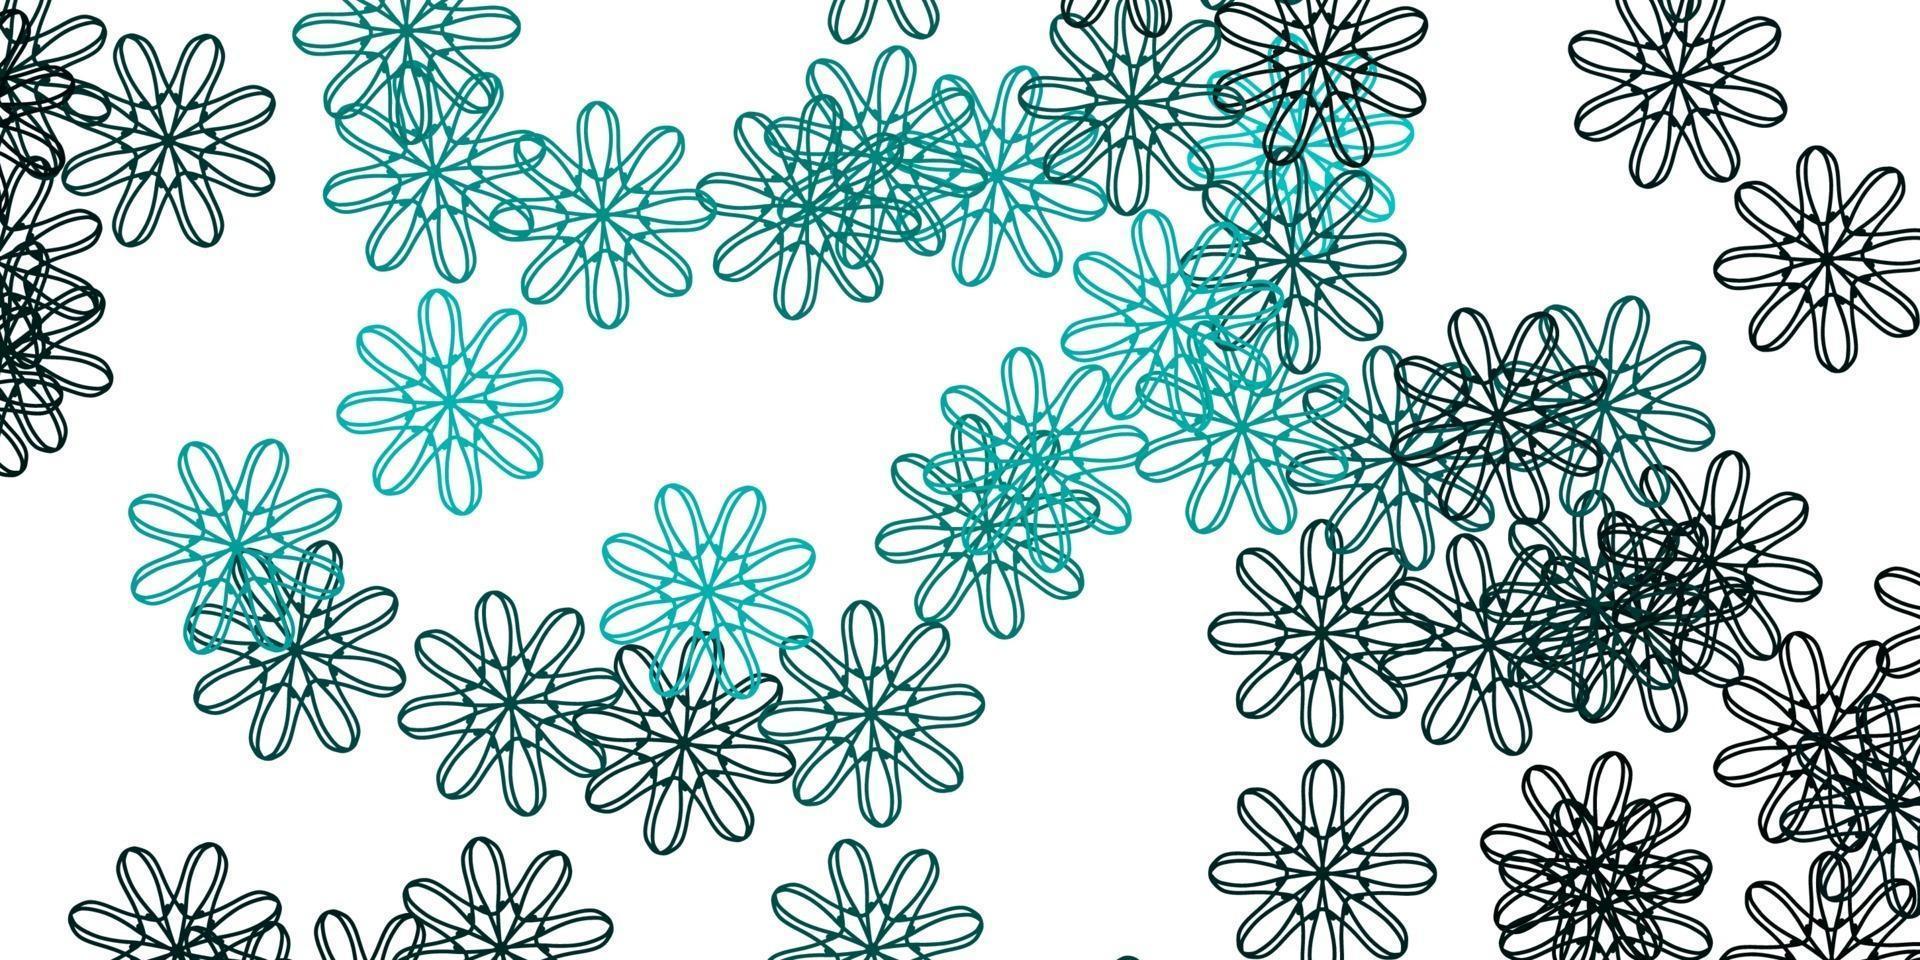 texture de doodle vecteur vert clair avec des fleurs.